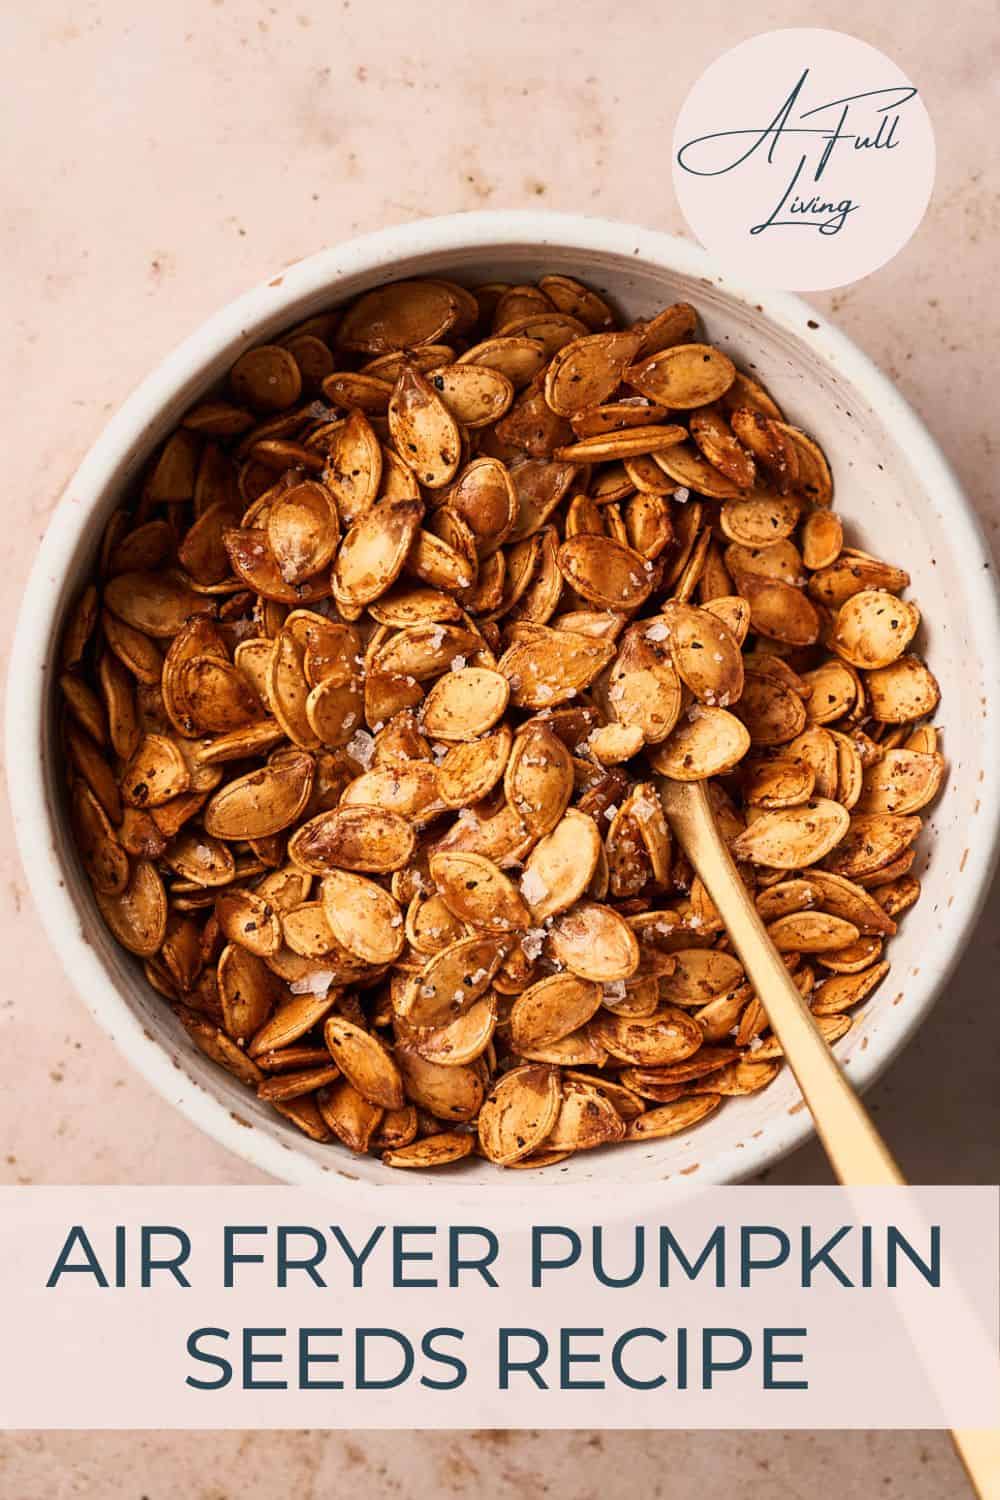 Air fryer pumpkin seeds.